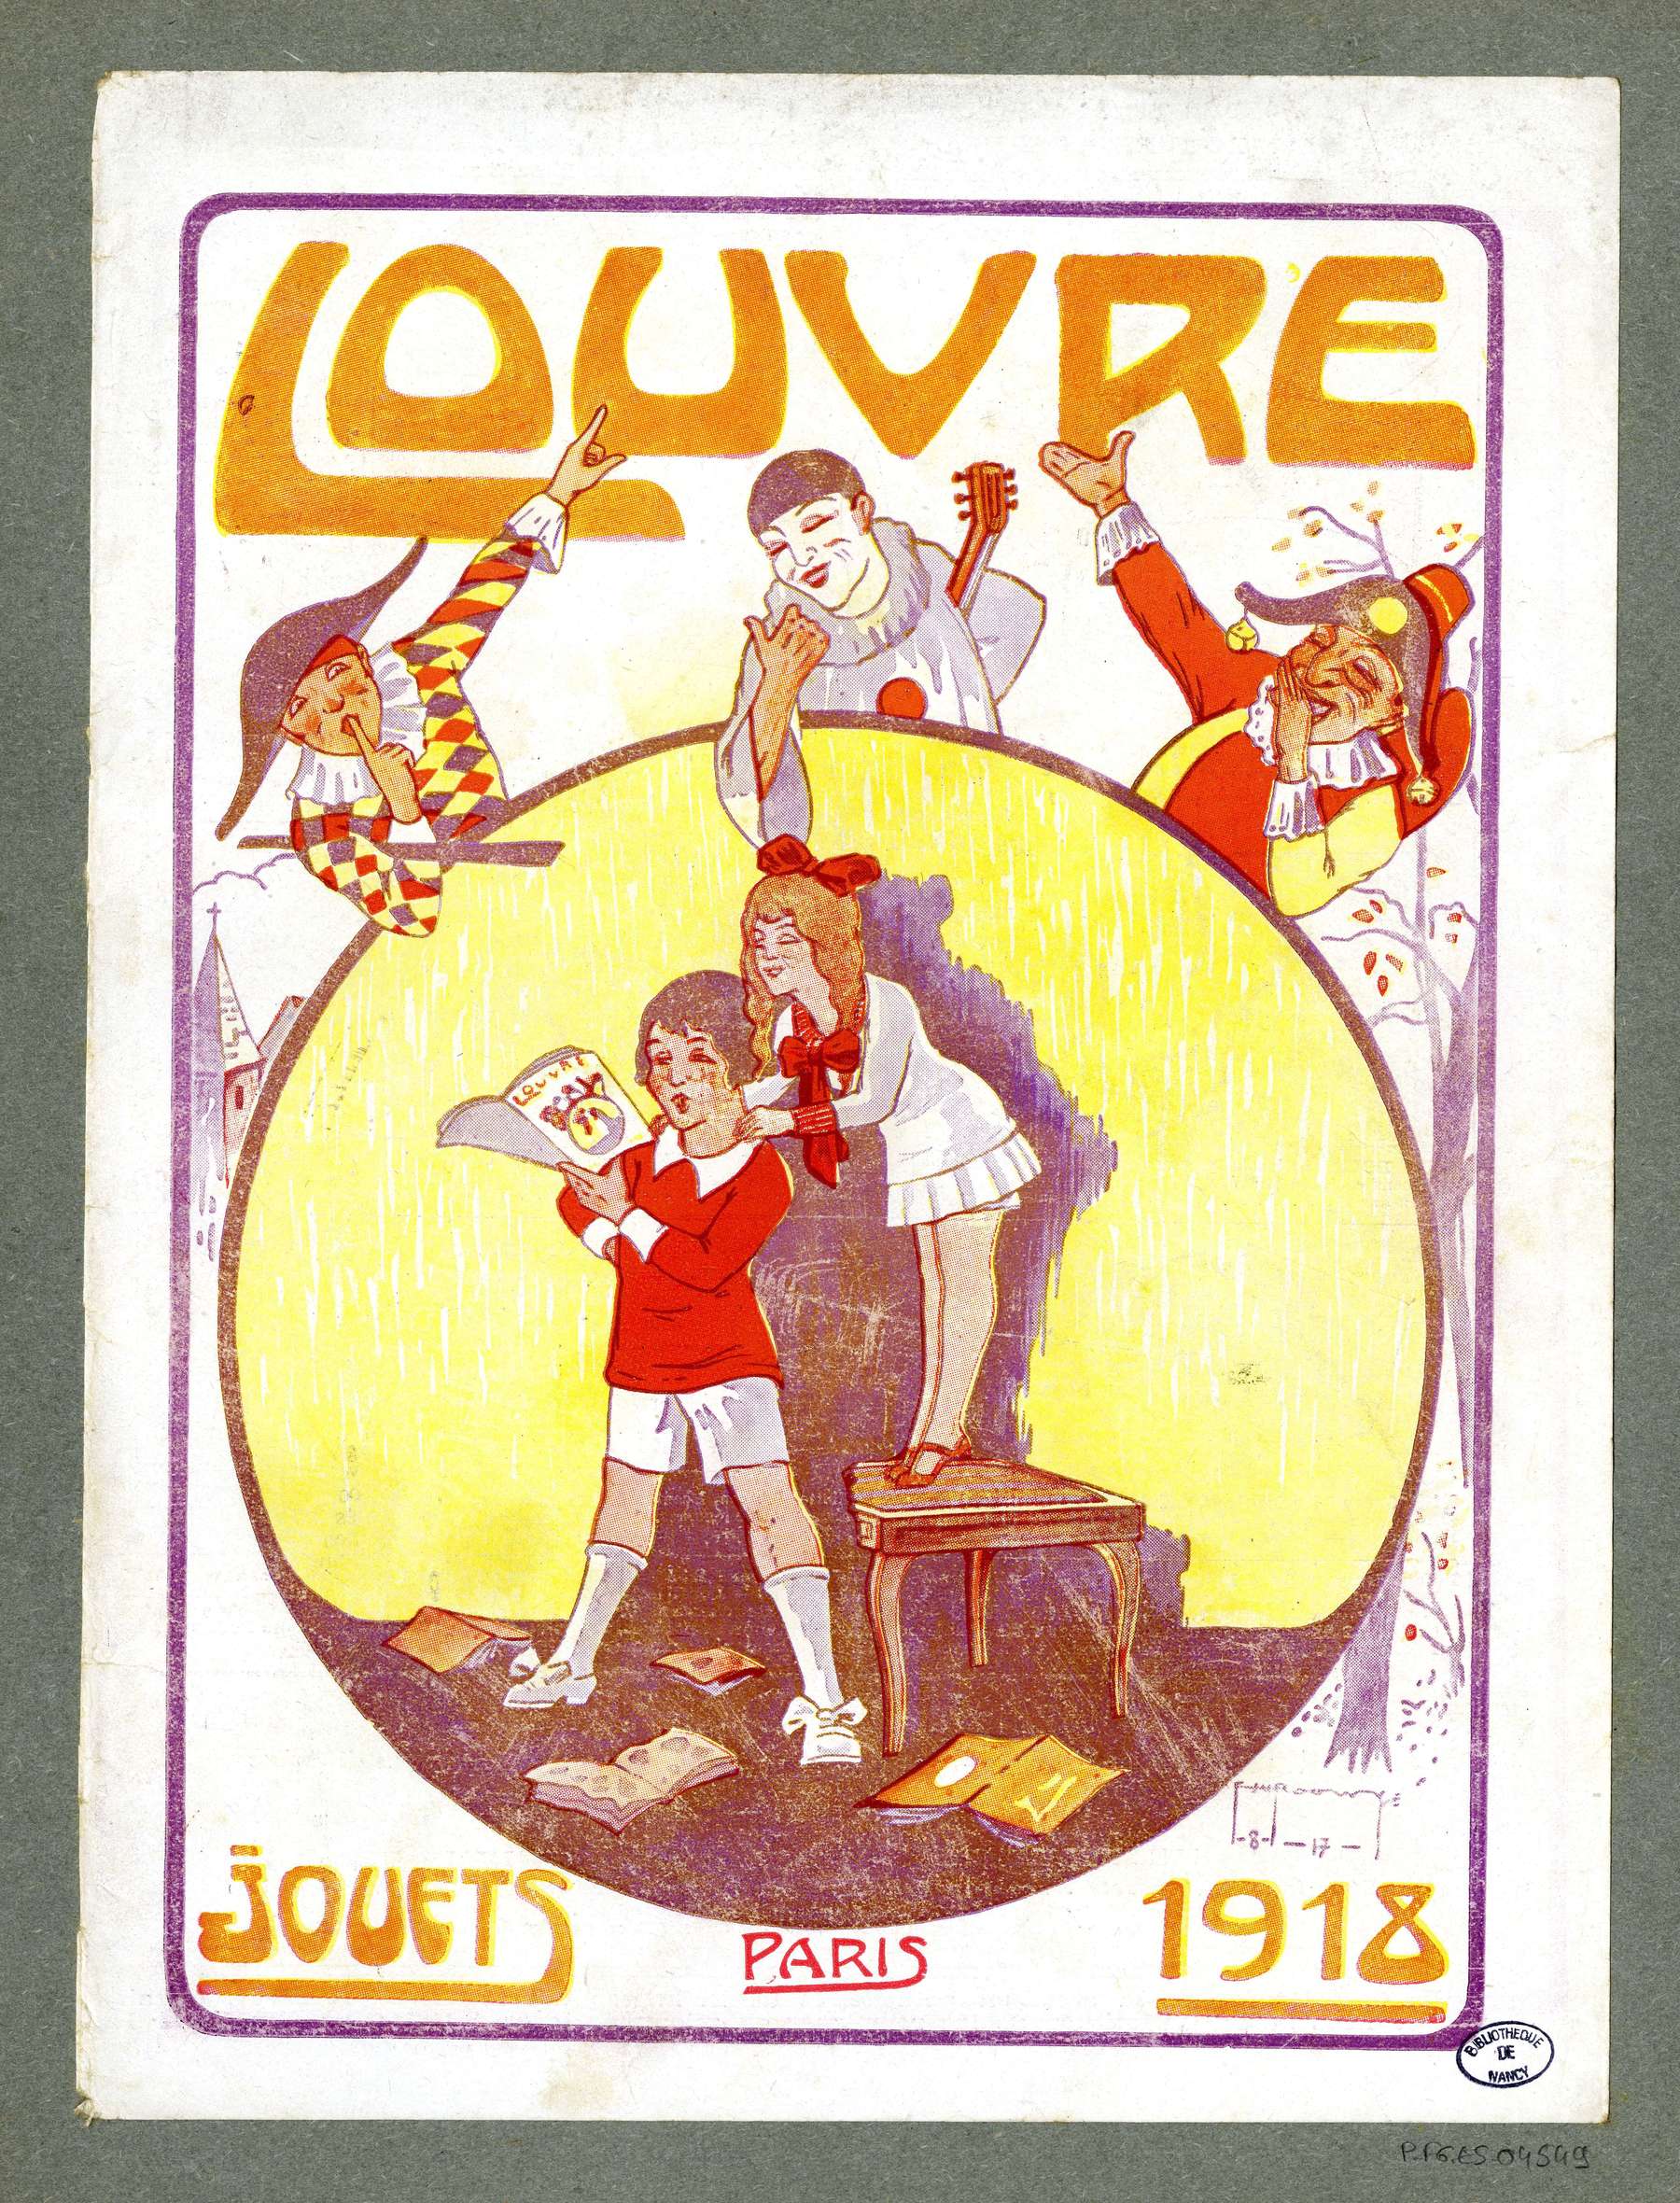 Contenu du "Louvre" Paris 1918